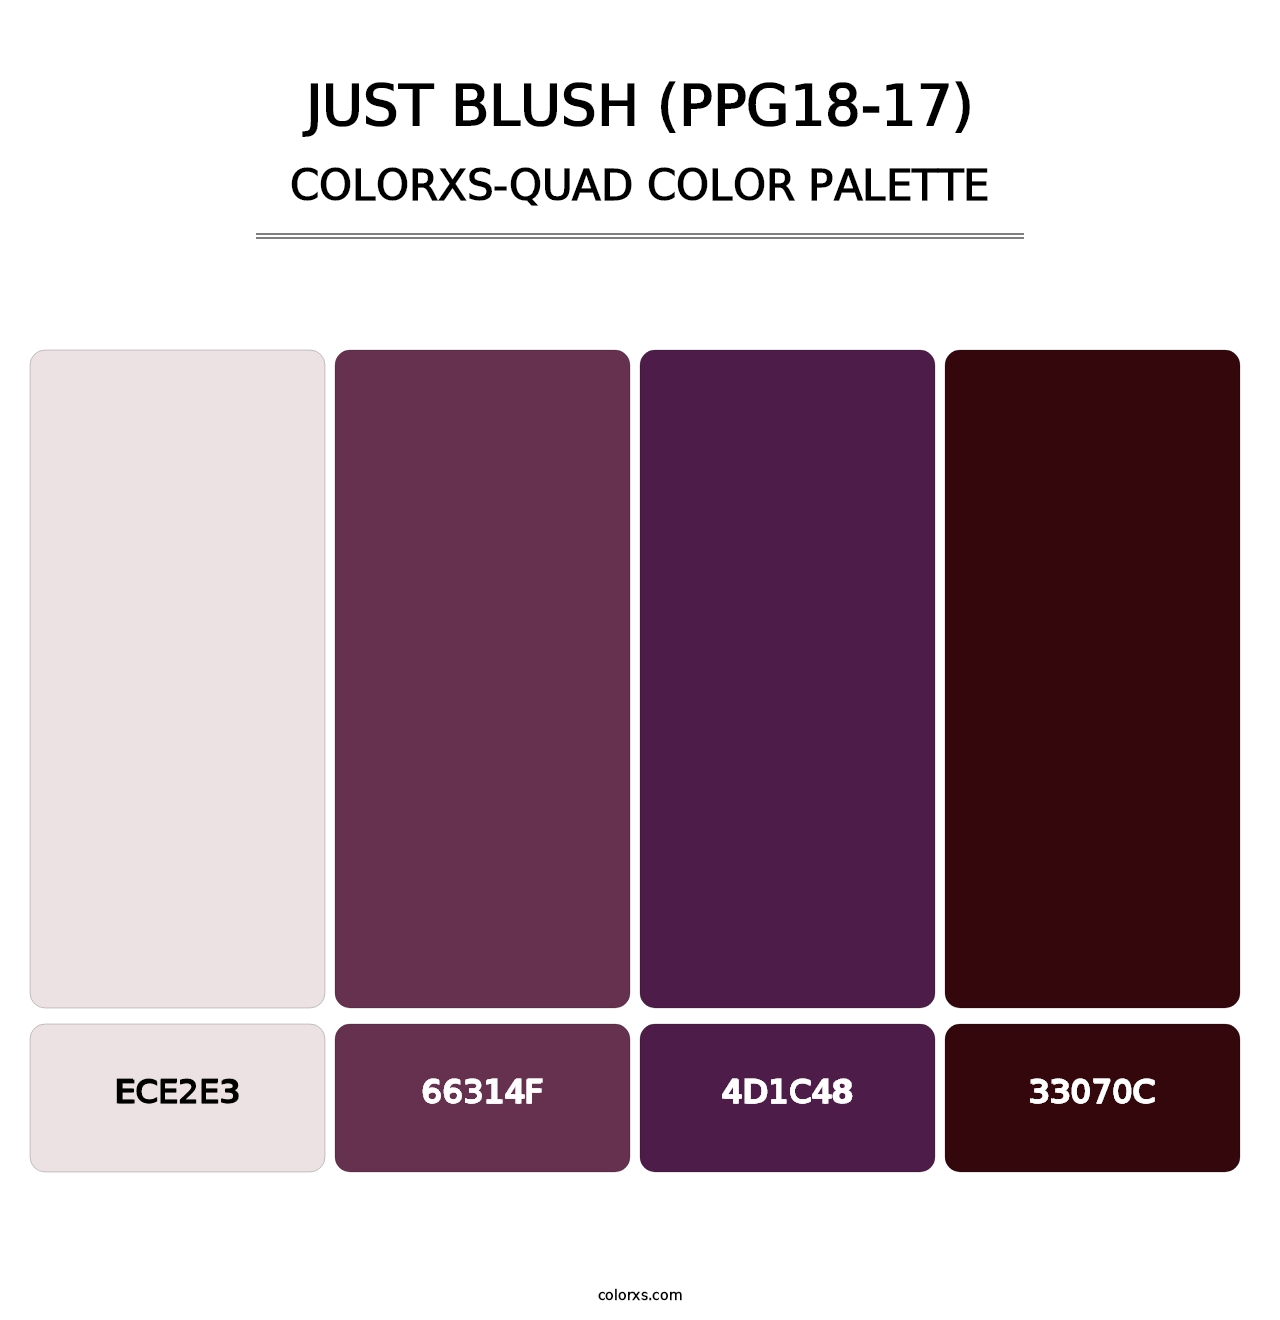 Just Blush (PPG18-17) - Colorxs Quad Palette